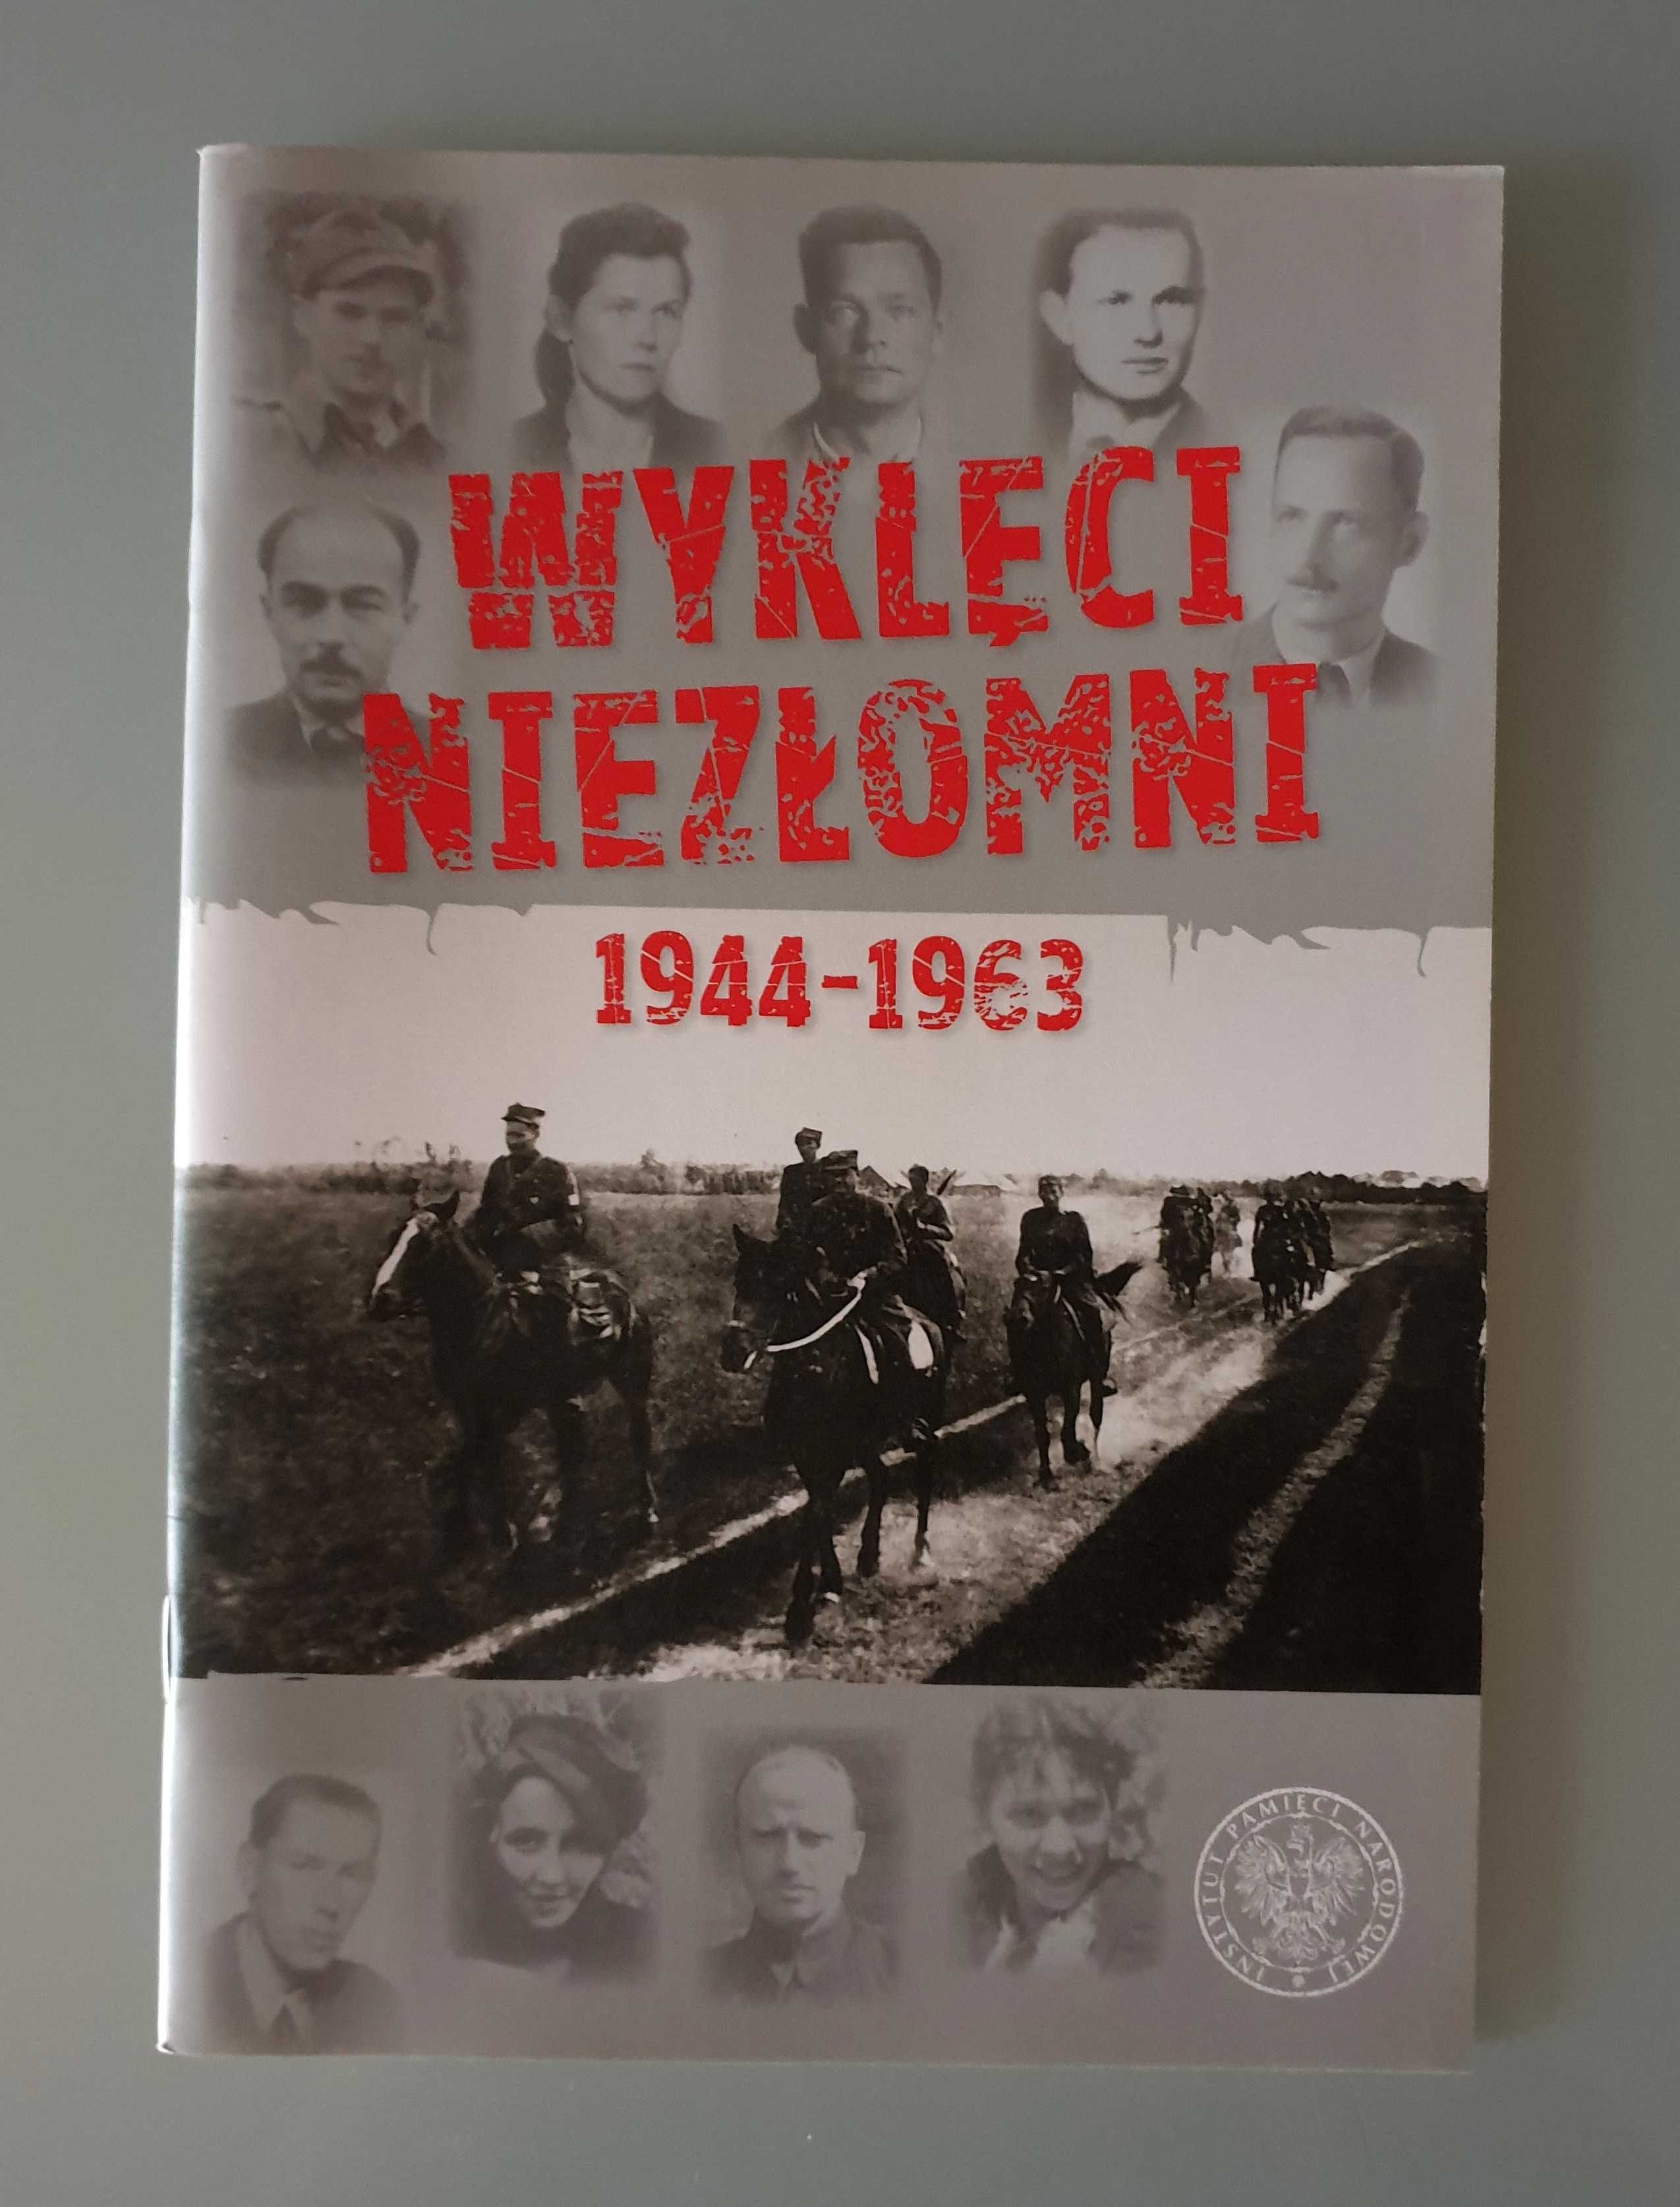 IPN, Łabuszewski, Niwiński, Szubarczyk - Wyklęci Niezłomni 1944 - 1963